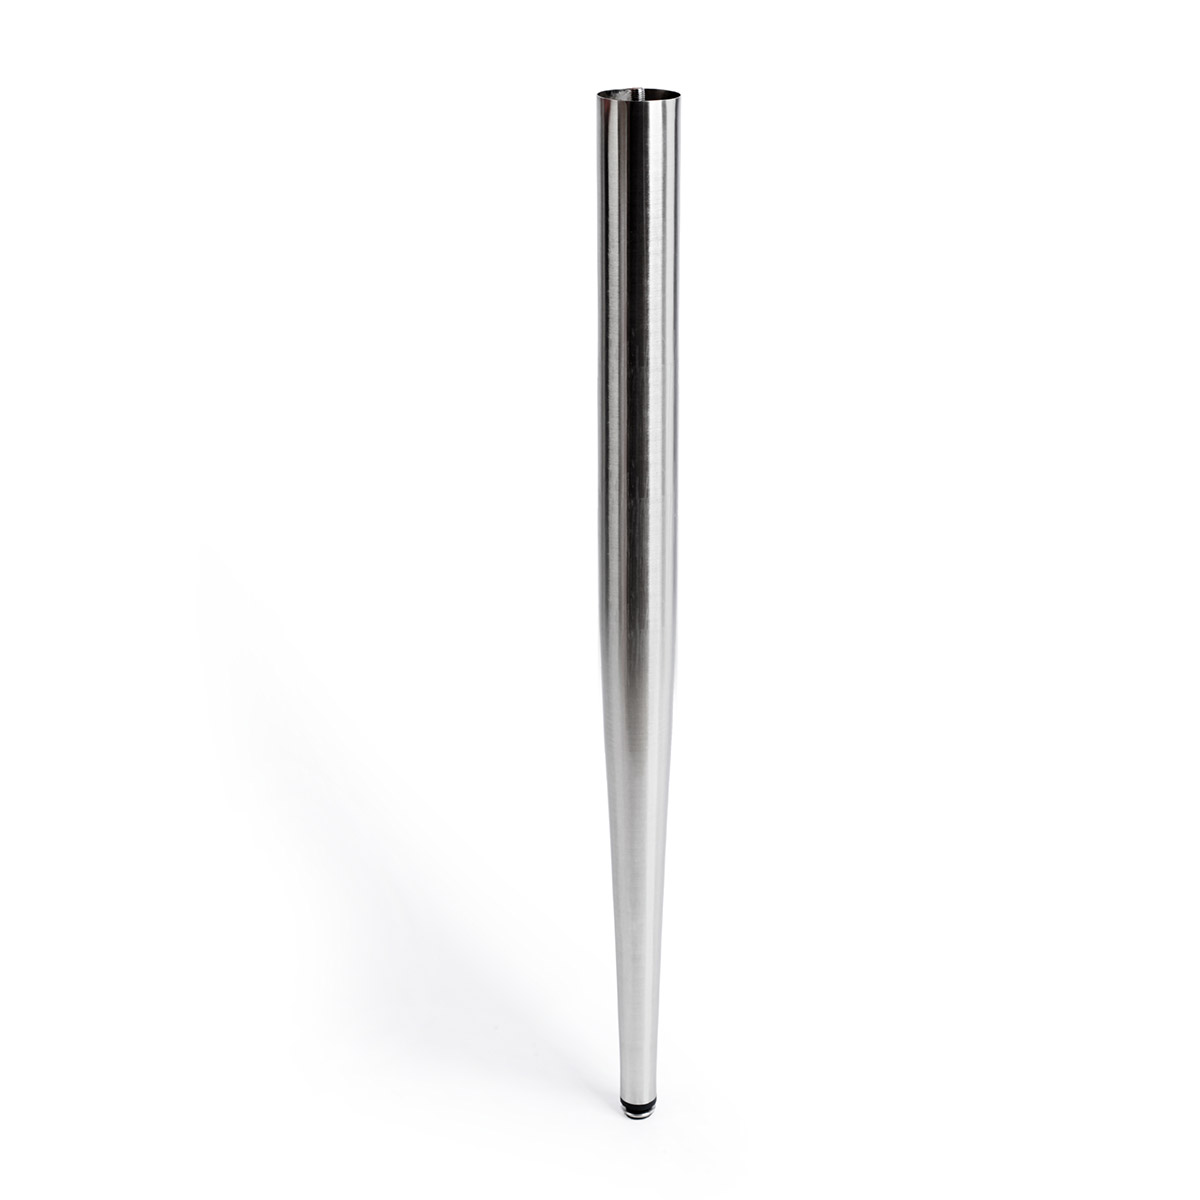 Pied cylindrique en acier d'une hauteur de 860 mm et finition aluminium. Dimensions: 60x60x860 mm